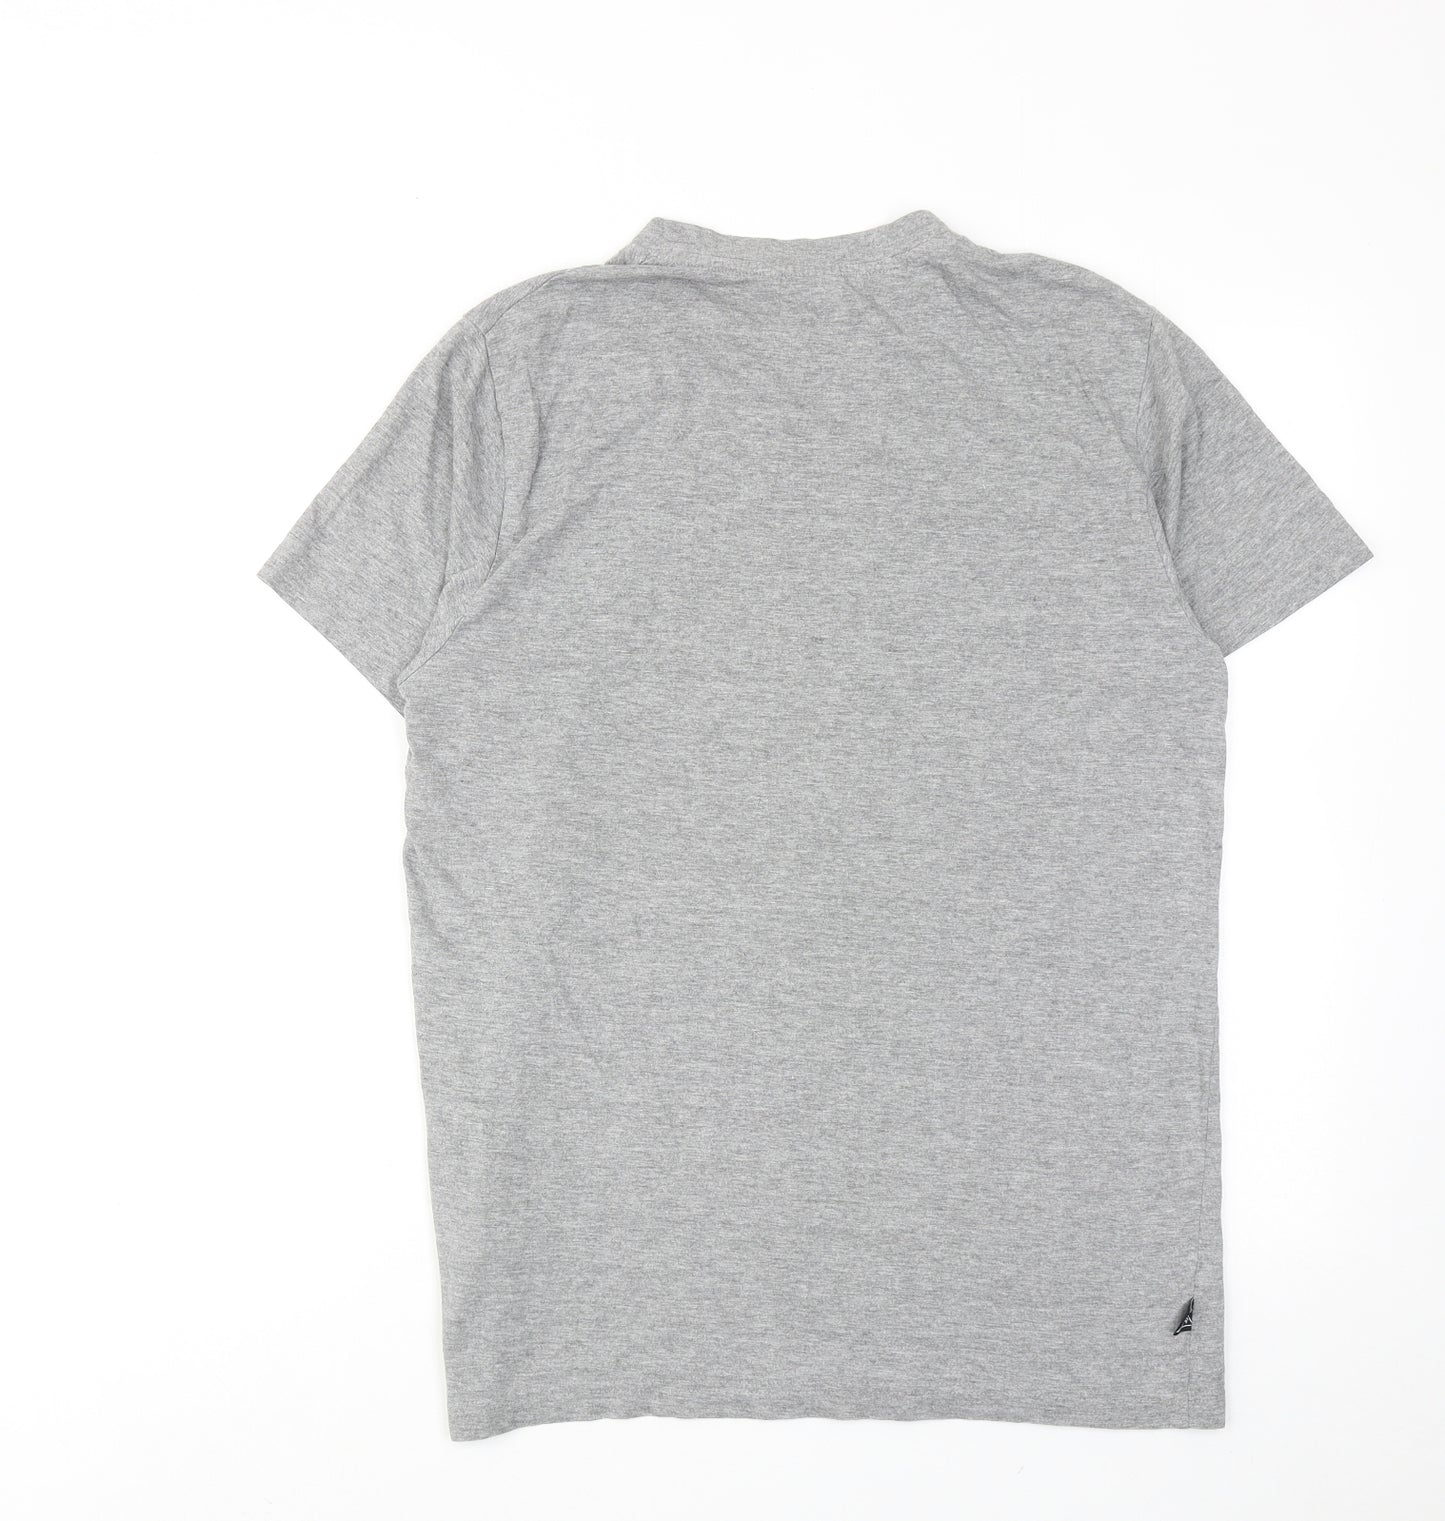 le coq sportif Mens Grey Cotton T-Shirt Size S Round Neck